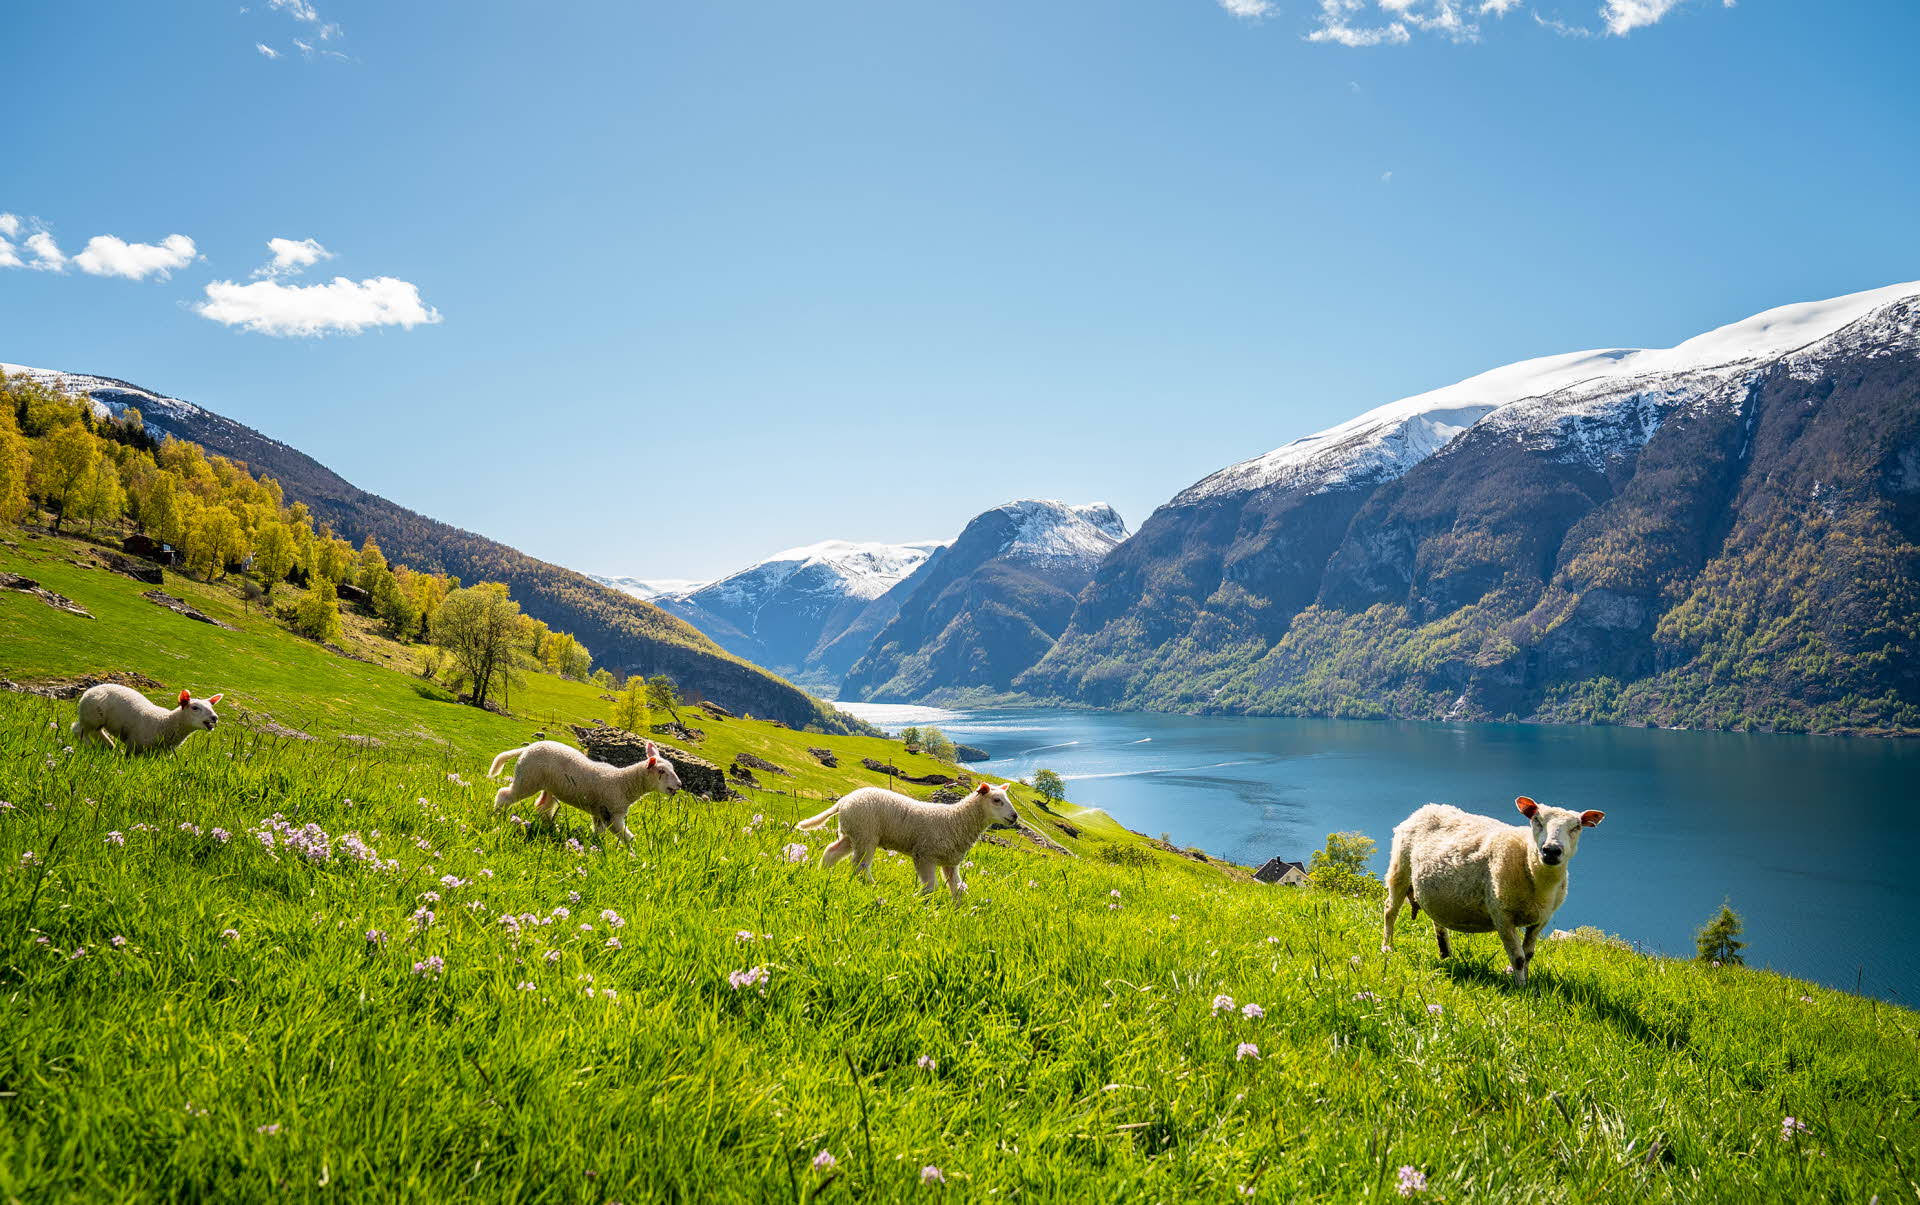 绵羊正在盛开花朵的草地吃草，可以看到被收入世界遗产名录的艾于兰峡湾，两旁是白雪覆盖的山峰